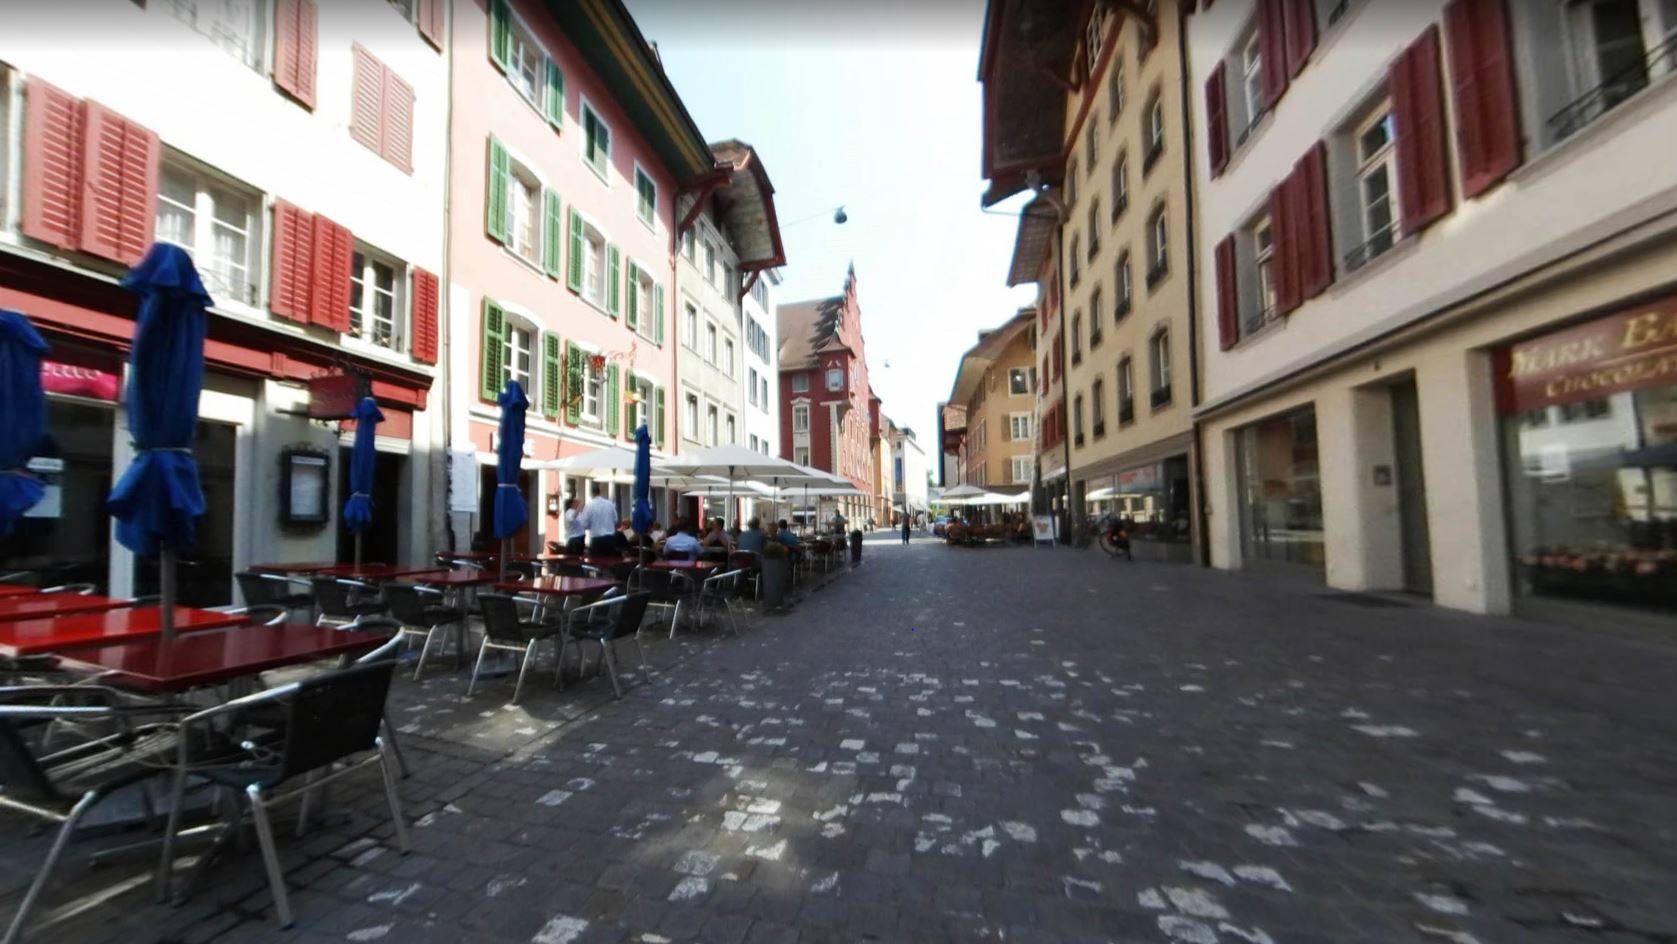 Am Sonntag detonierte ein Feuerwerkskörper in der Nähe der Kronenbar in der Aarauer Innenstadt.